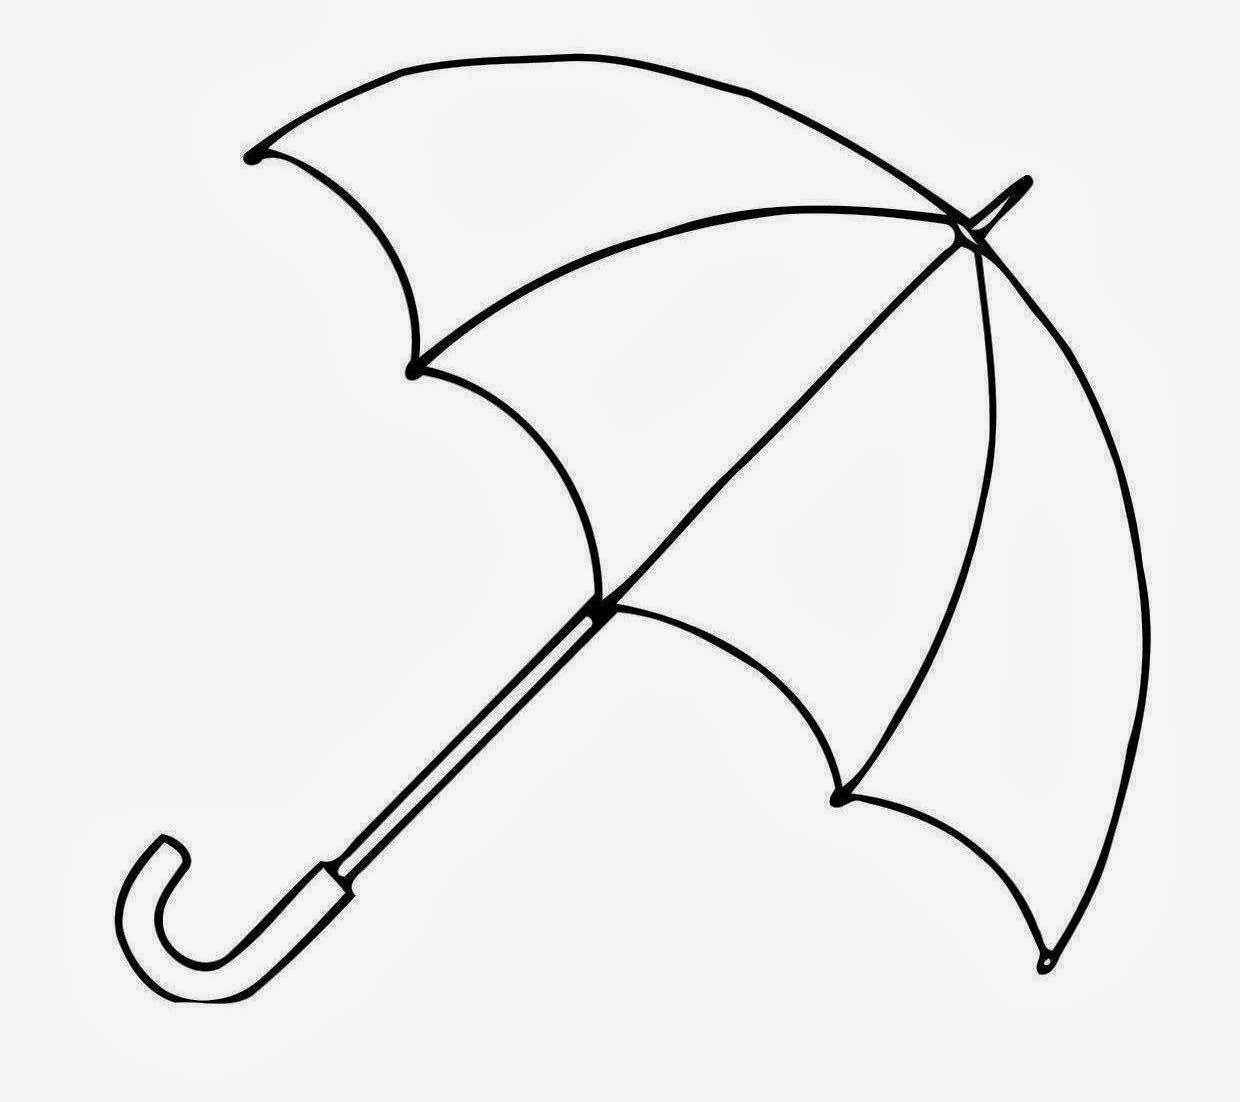 Clip on umbrellas clipart cli